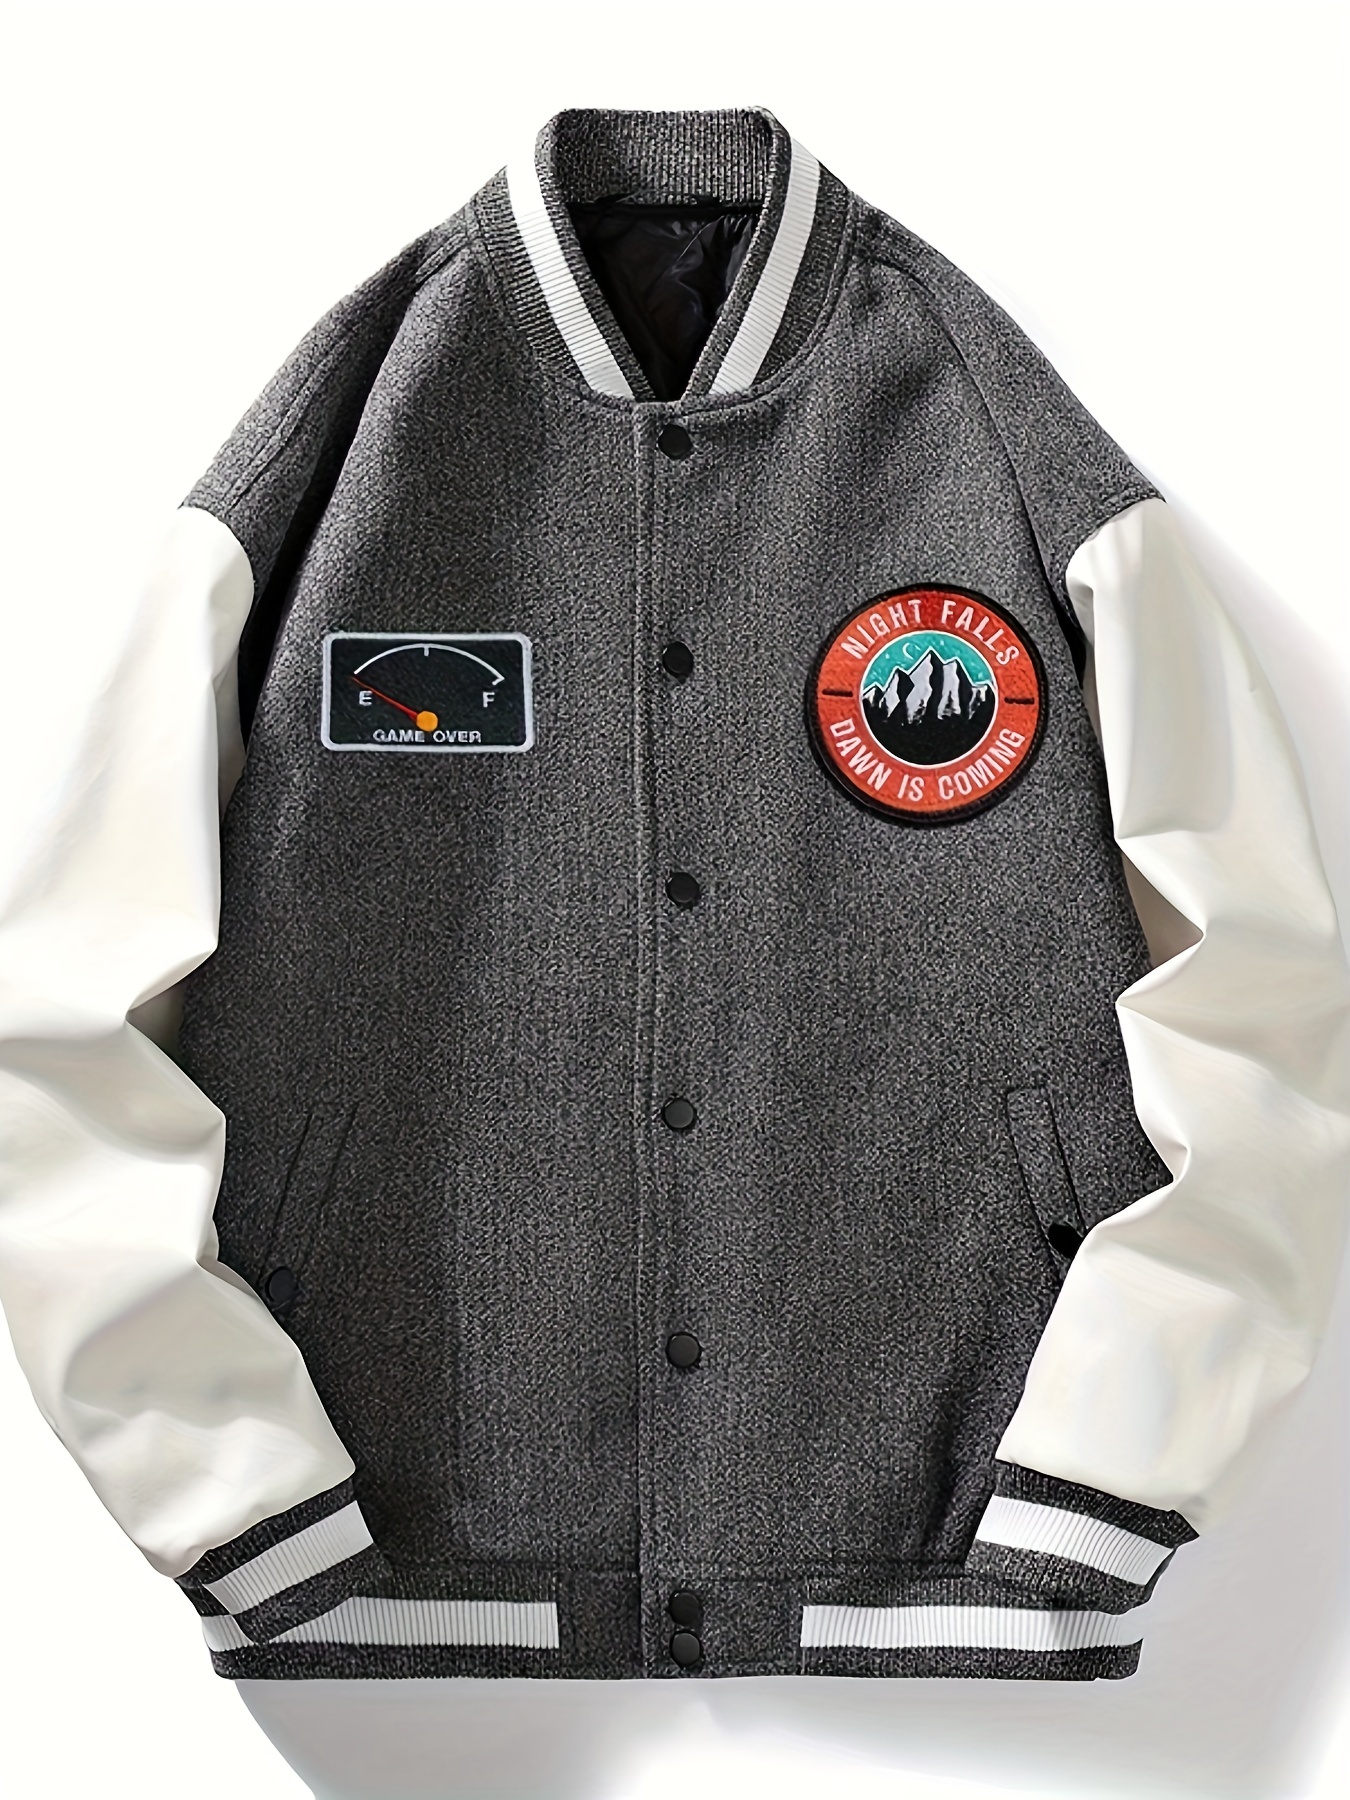 Warm Fleece Embroidery Varsity Jacket, Men's Casual Color Block